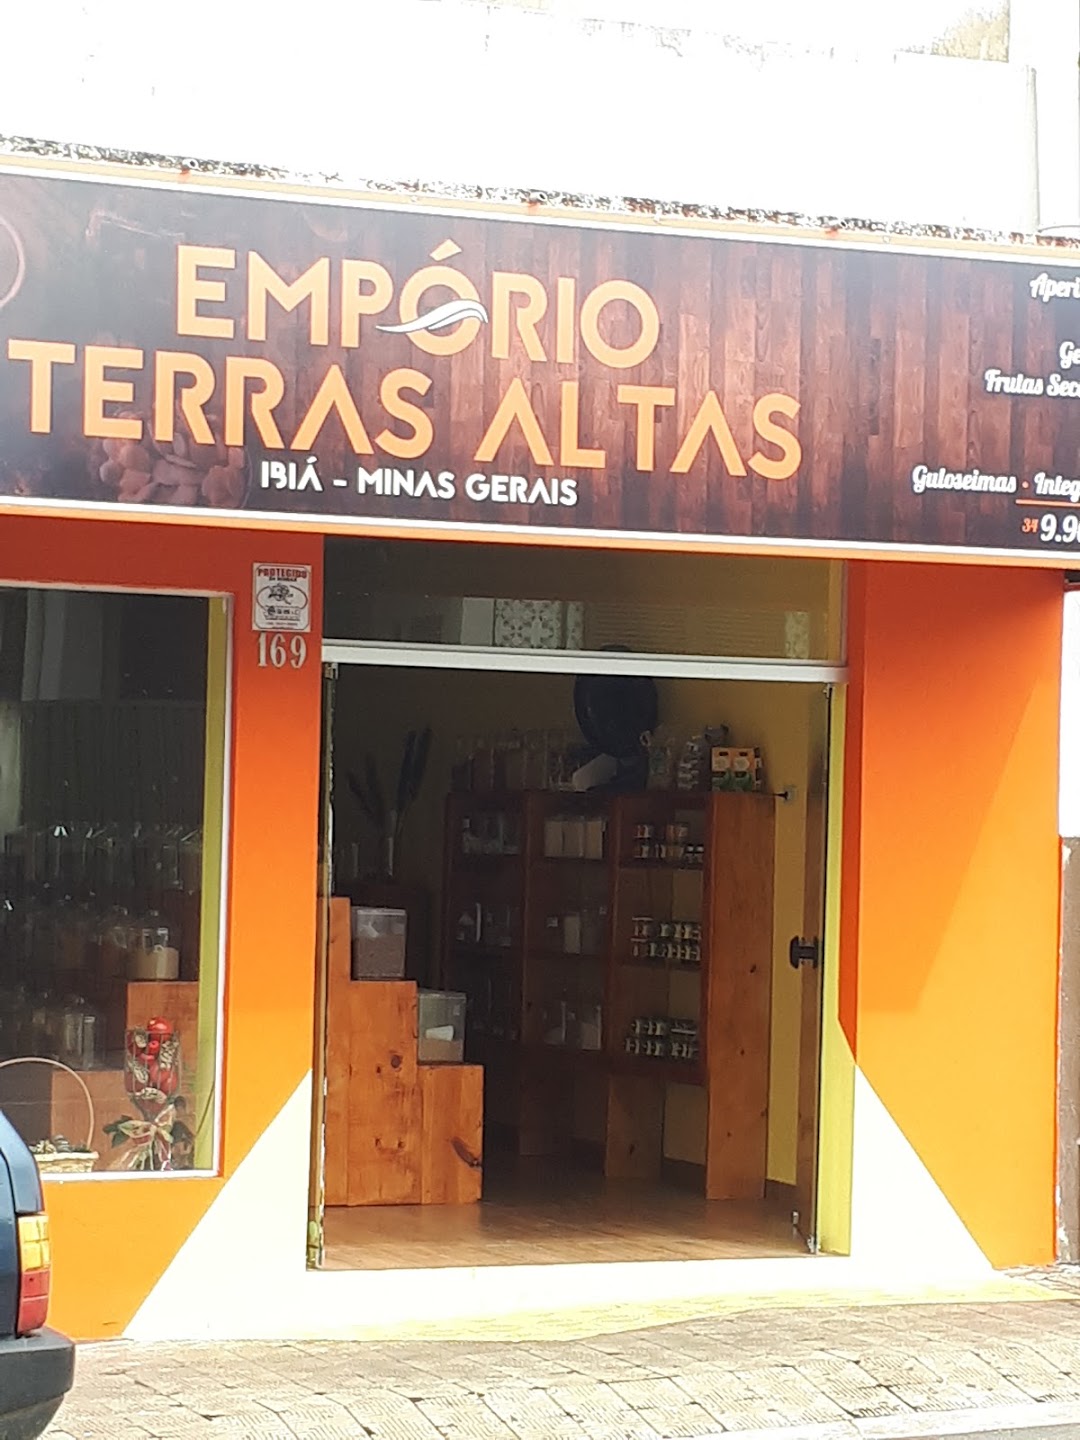 EMPÓRIO TERRAS ALTAS